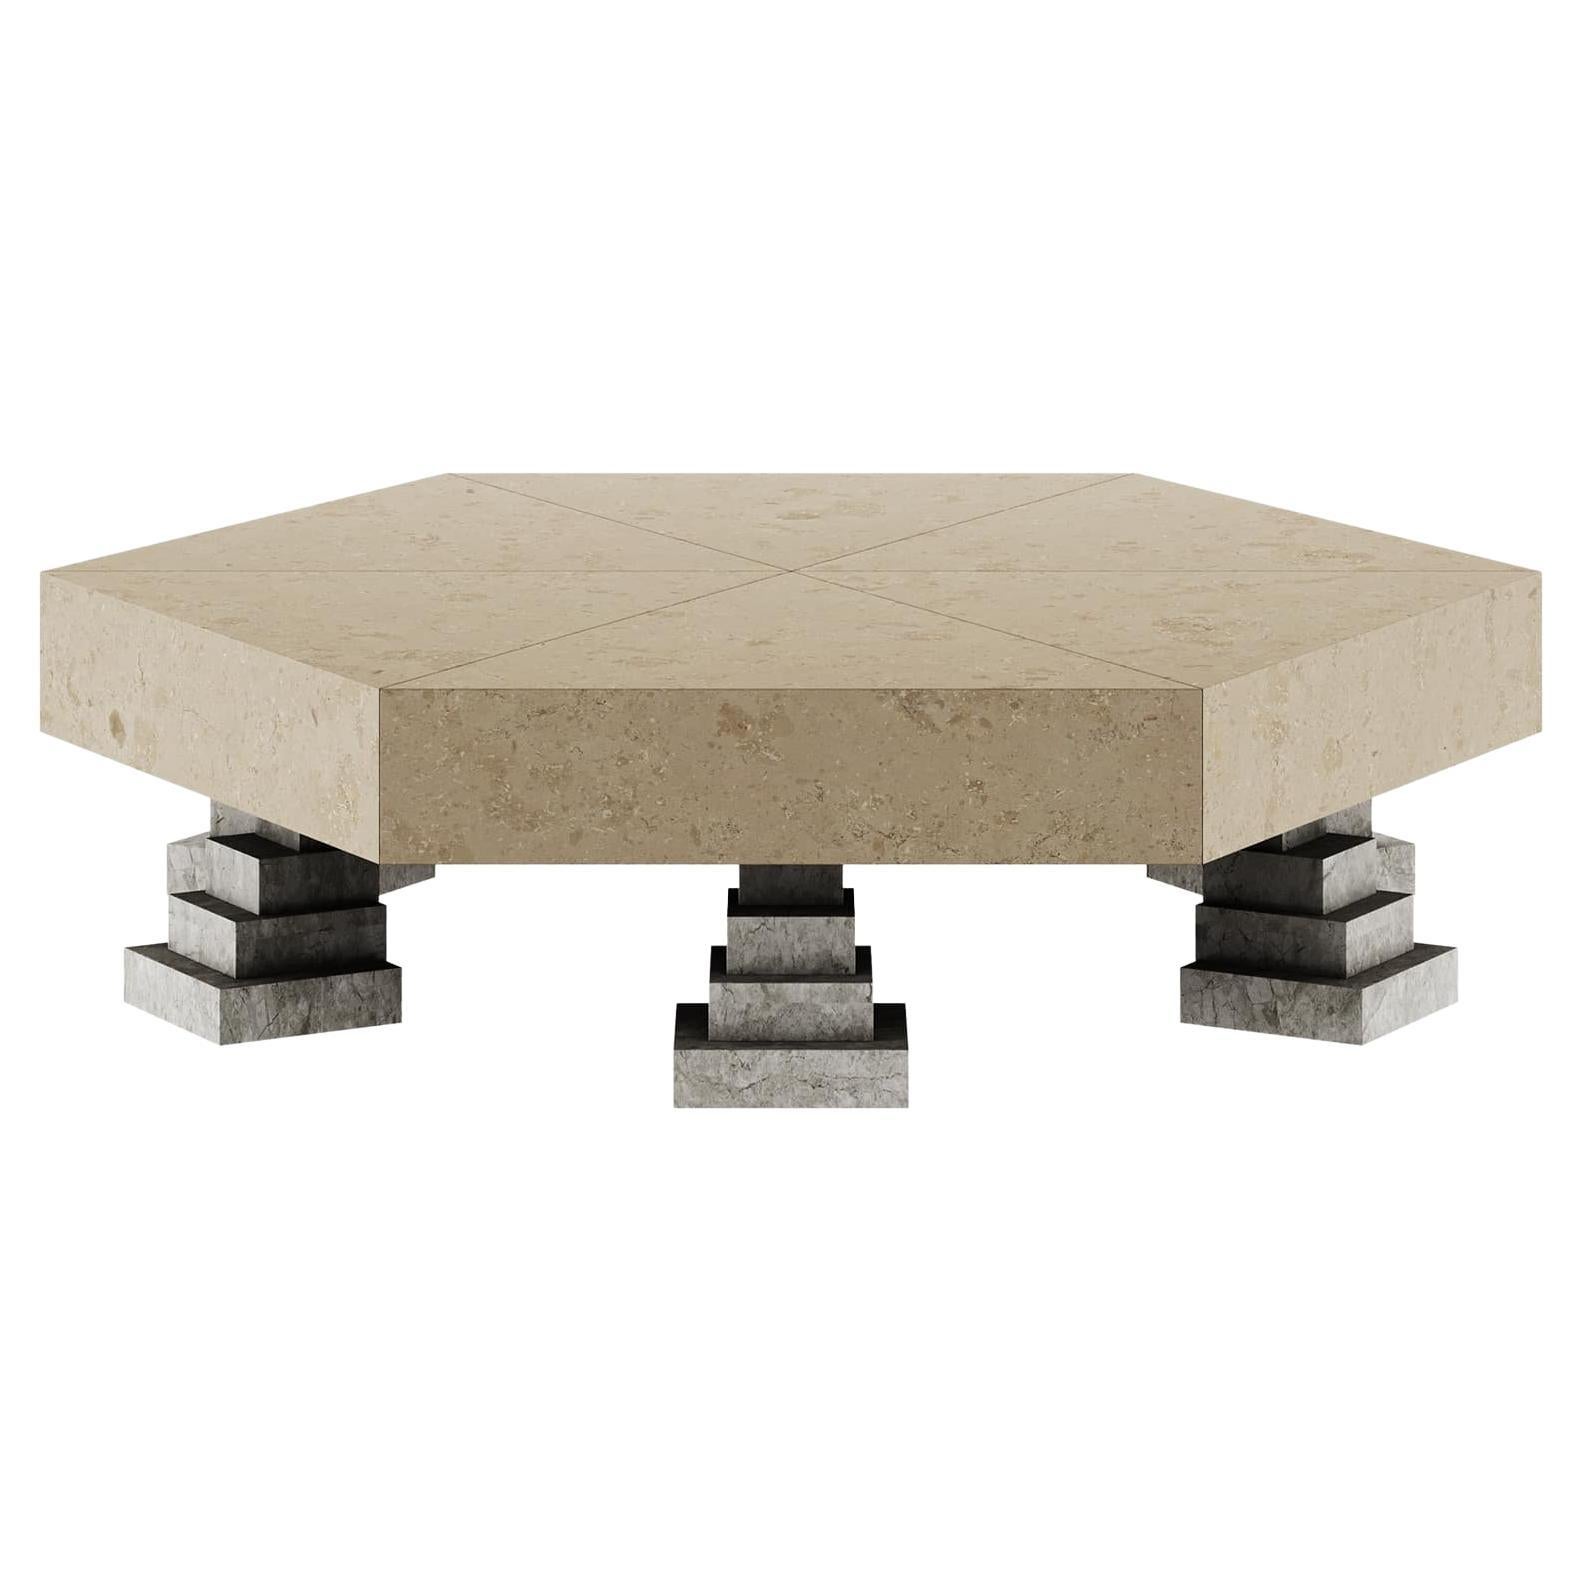 Contemporary Geometric Center Table in Grigio Tundra & Natural Beige Limestone